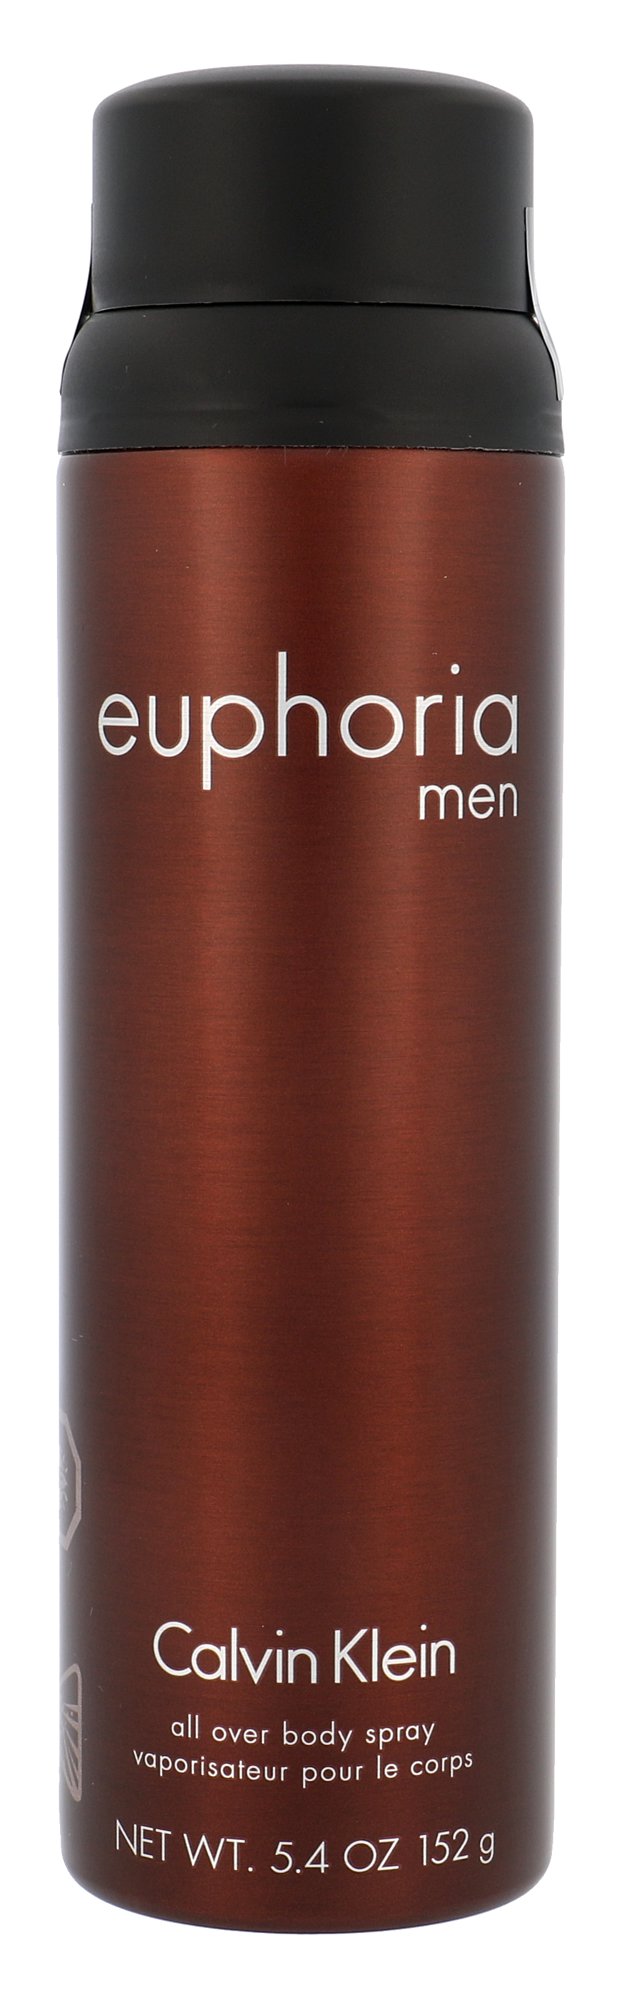 Calvin Klein Euphoria Men, Dezodorant 160g